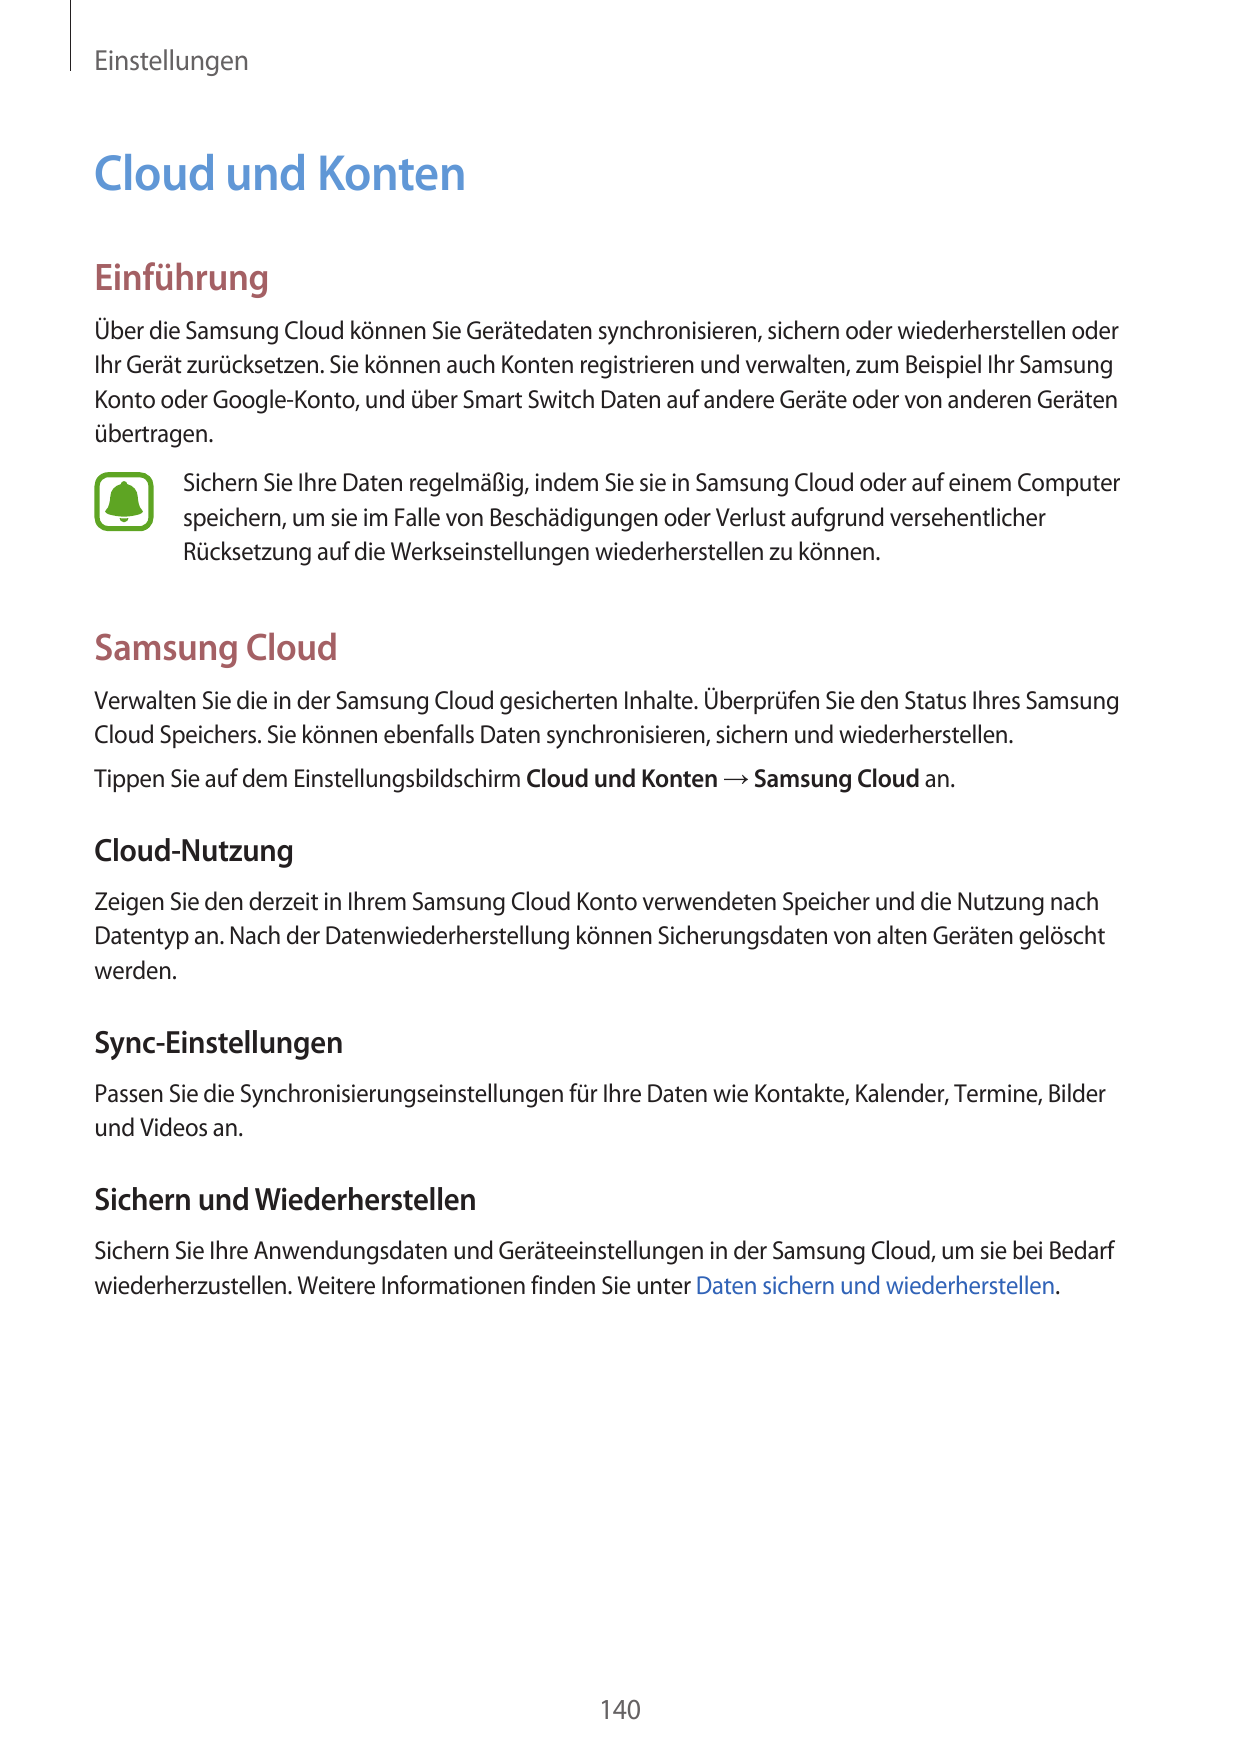 EinstellungenCloud und KontenEinführungÜber die Samsung Cloud können Sie Gerätedaten synchronisieren, sichern oder wiederherstel